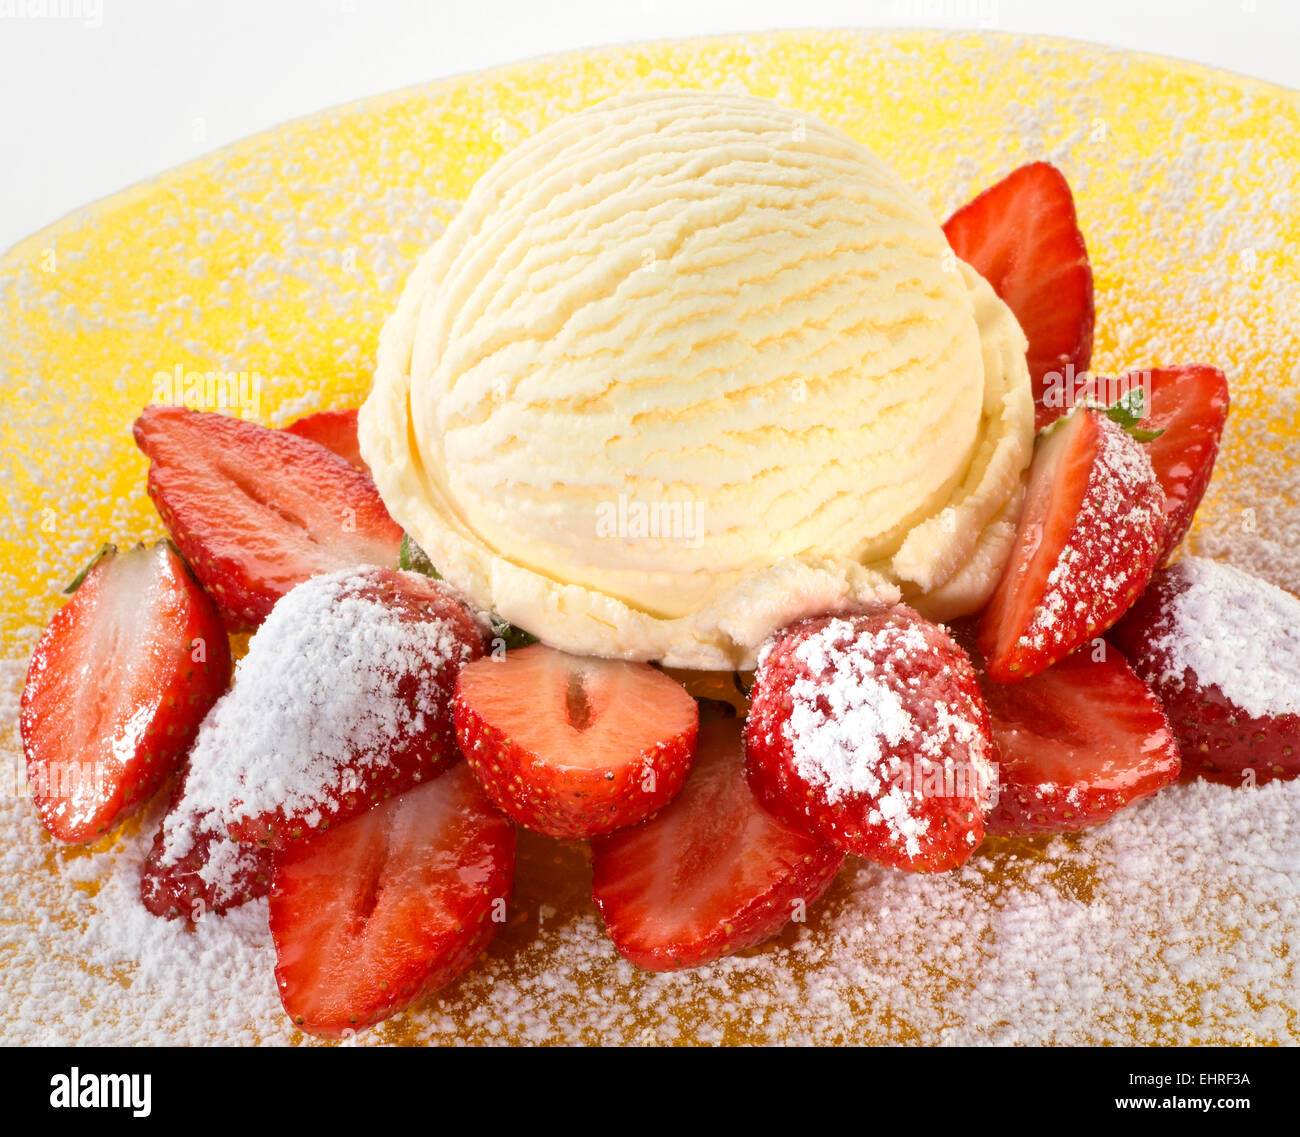 Ice cream with strawberries Stock Photo